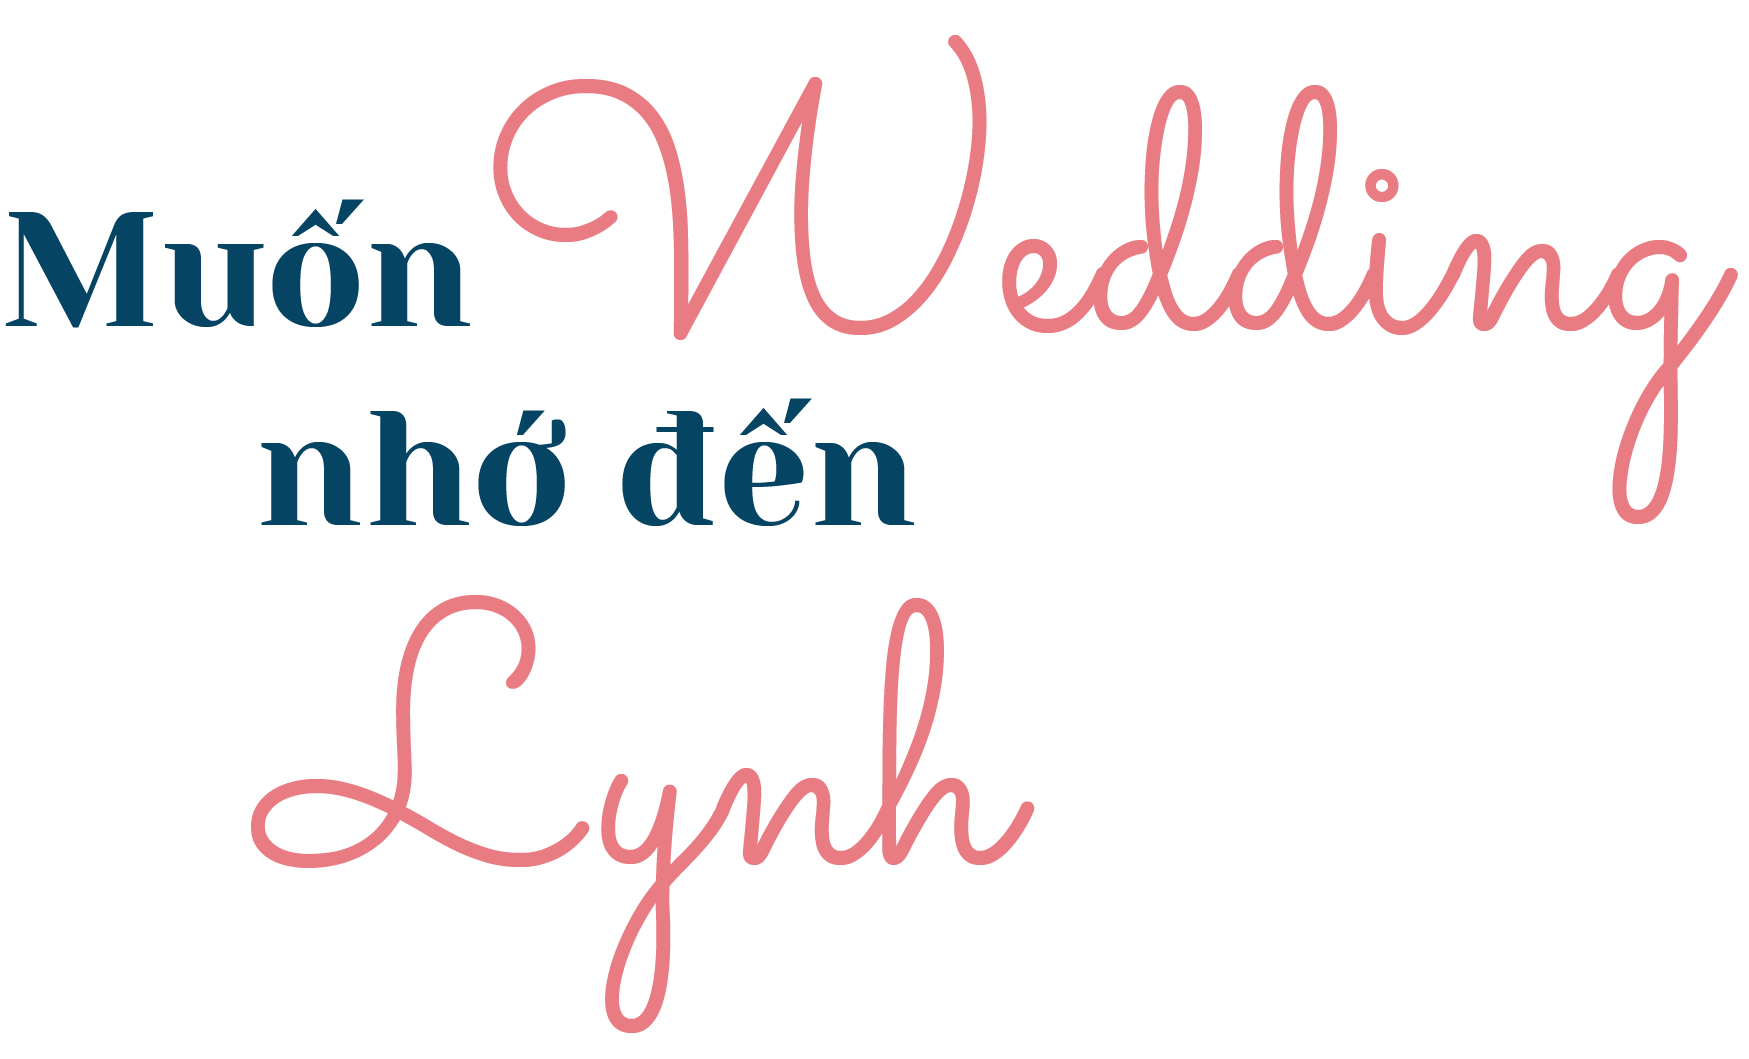 Lynhthuy muốn wedding nhớ đến lynh